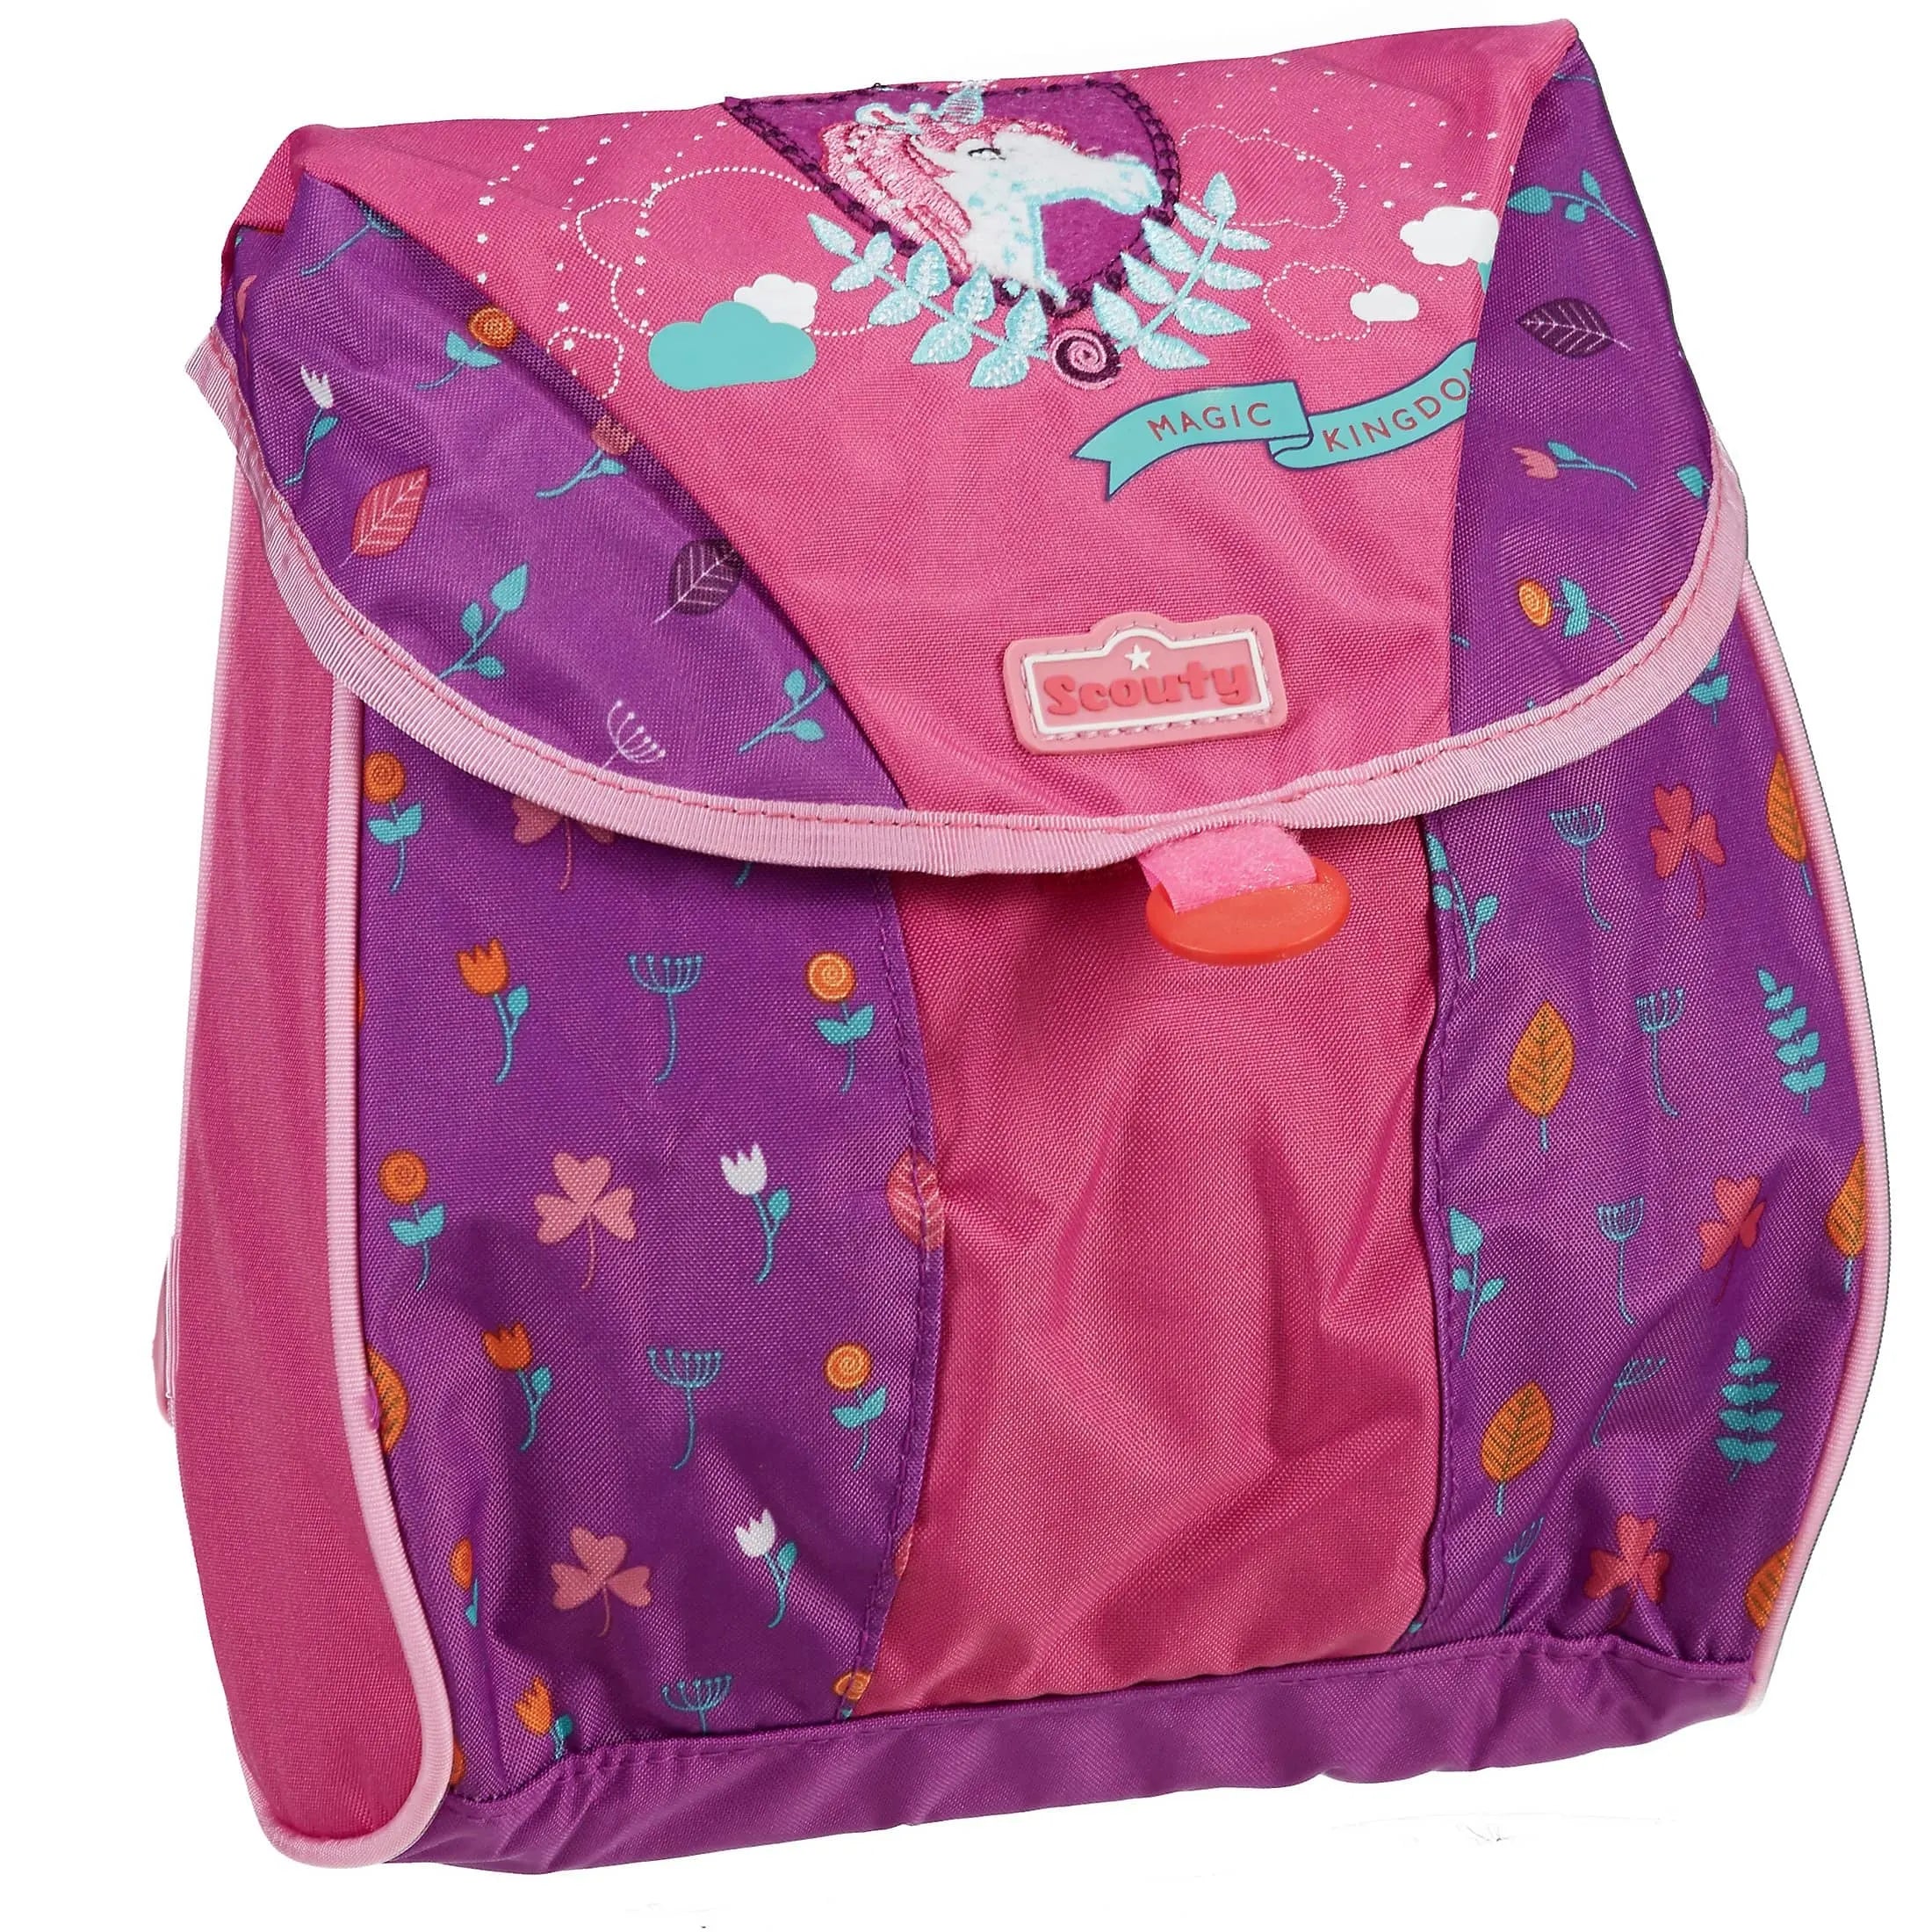 Scouty preschool Lucky backpack 24 cm - unicorn